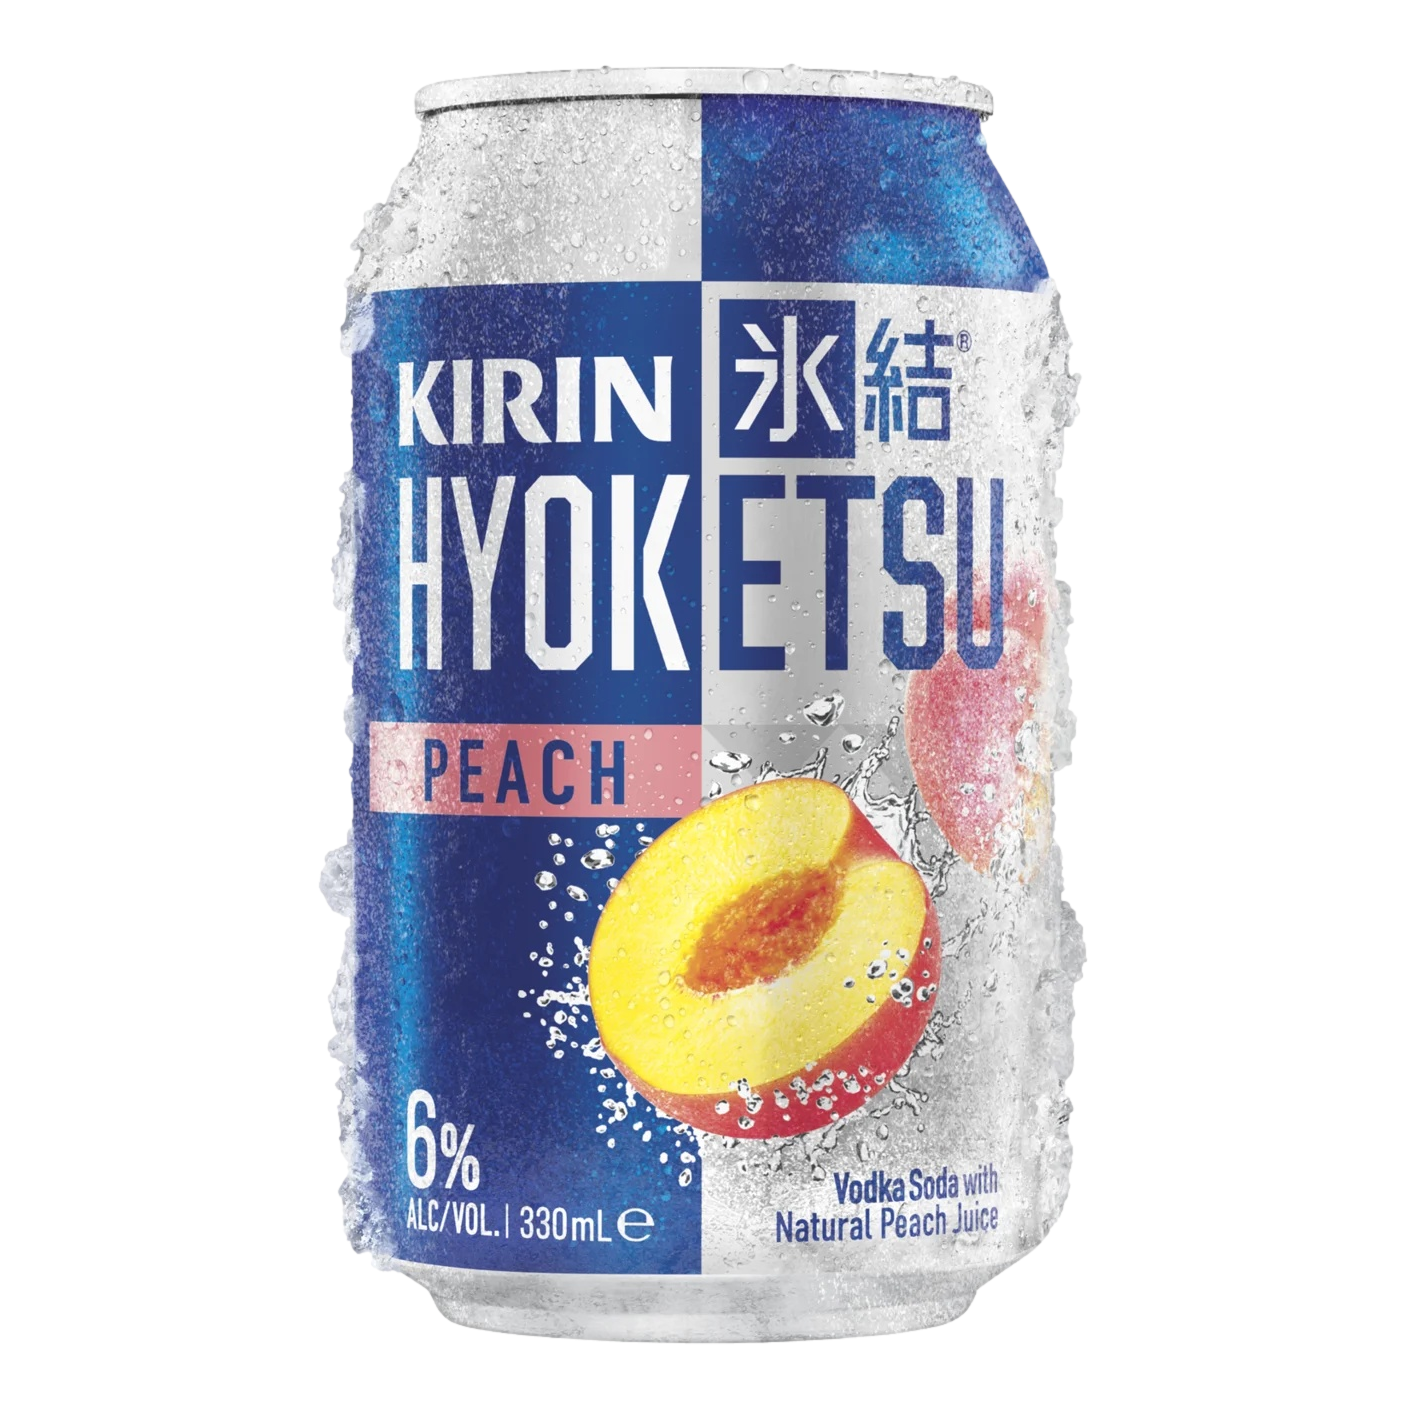 Kirin Hyoketsu Peach 330ml Can Single